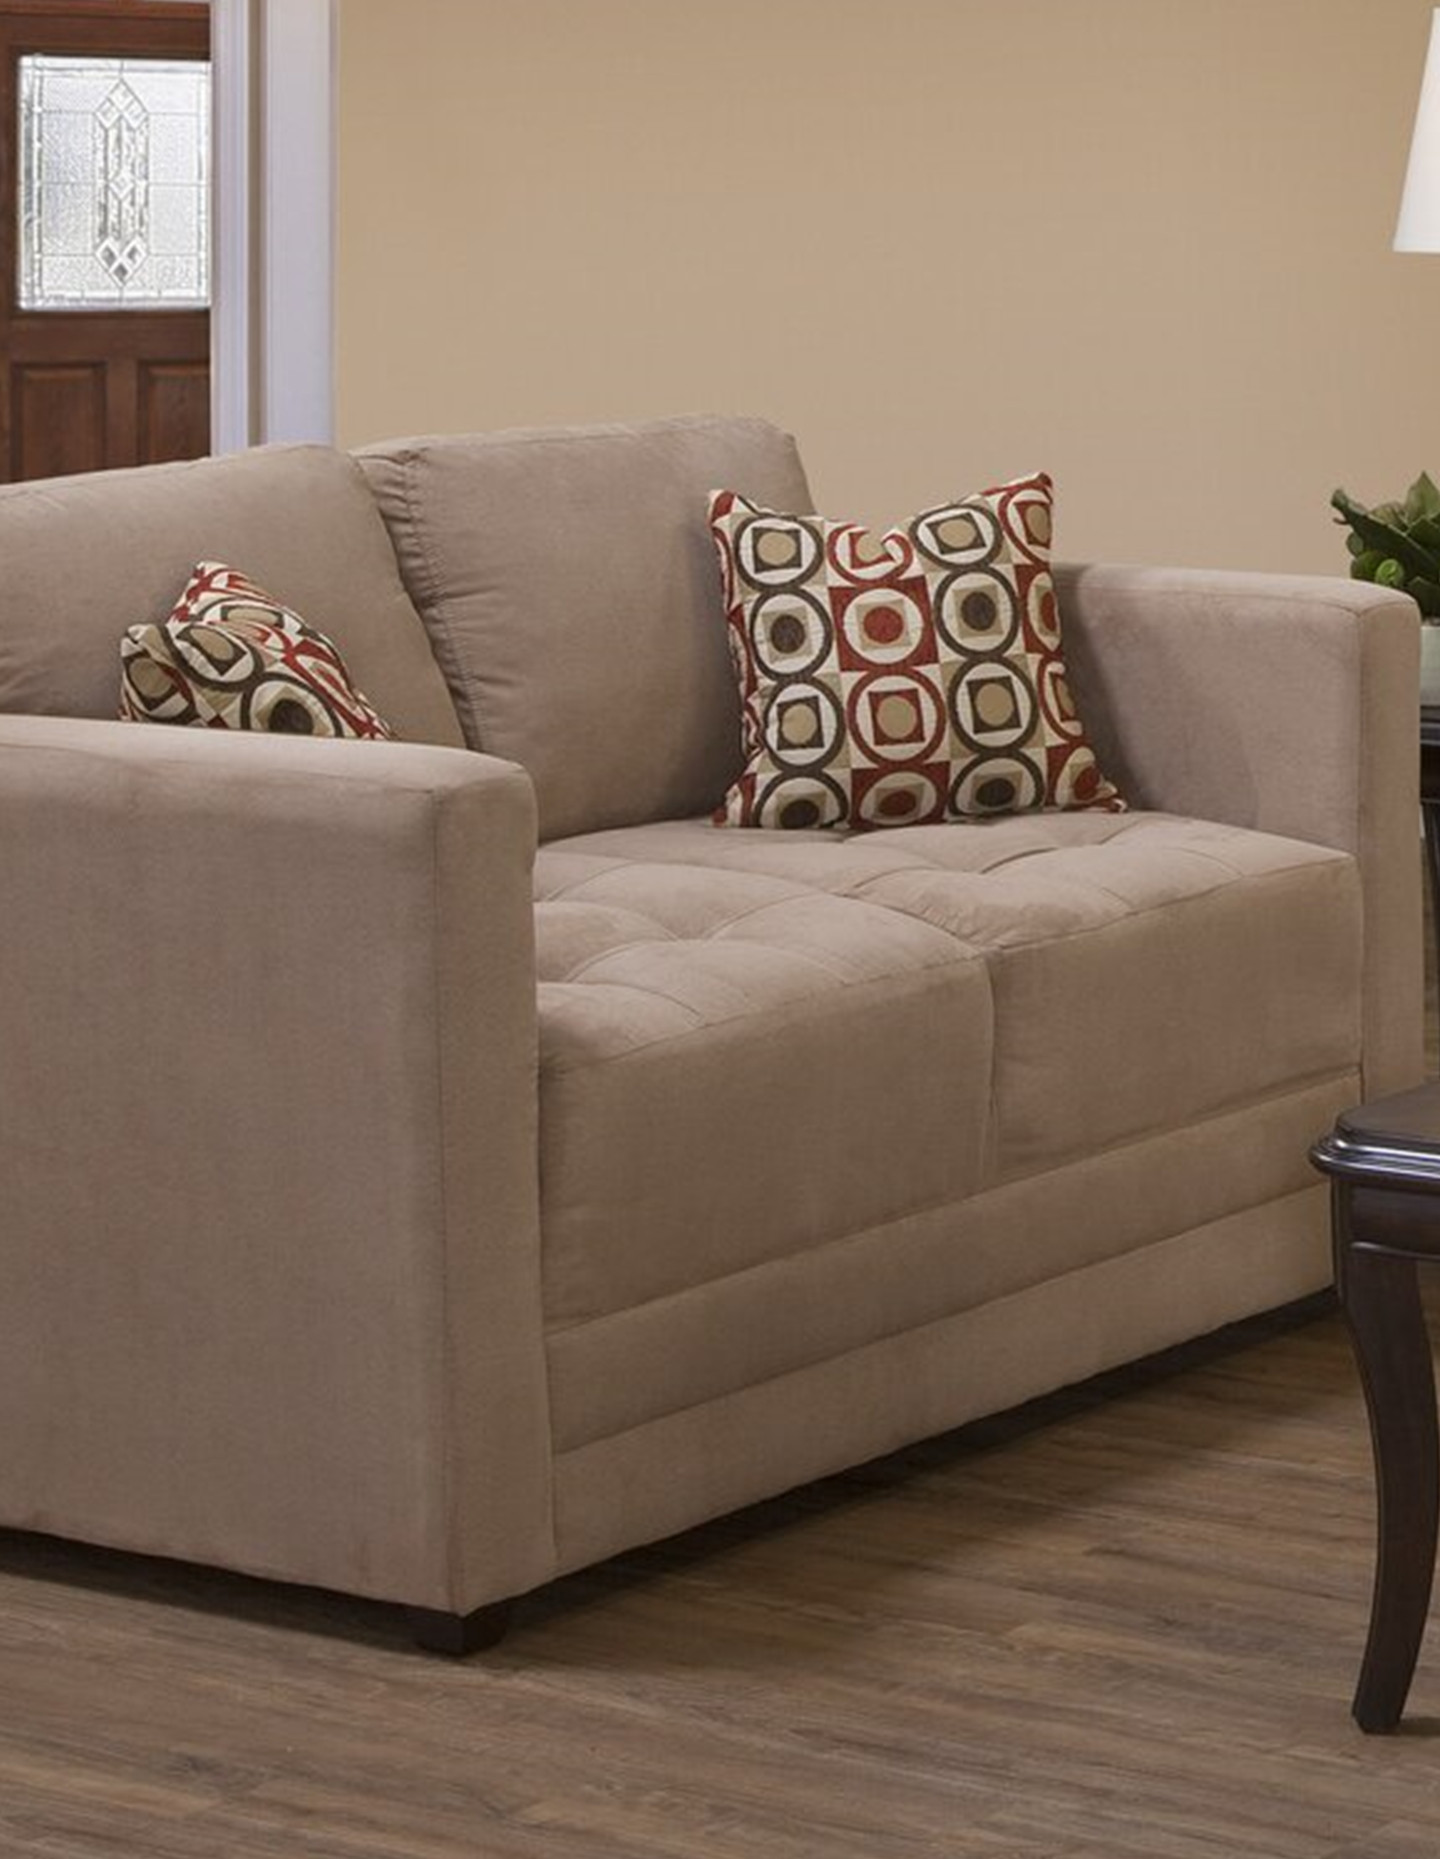 Duquette 2 Piece Configurable Living Room Set ReviewsU.